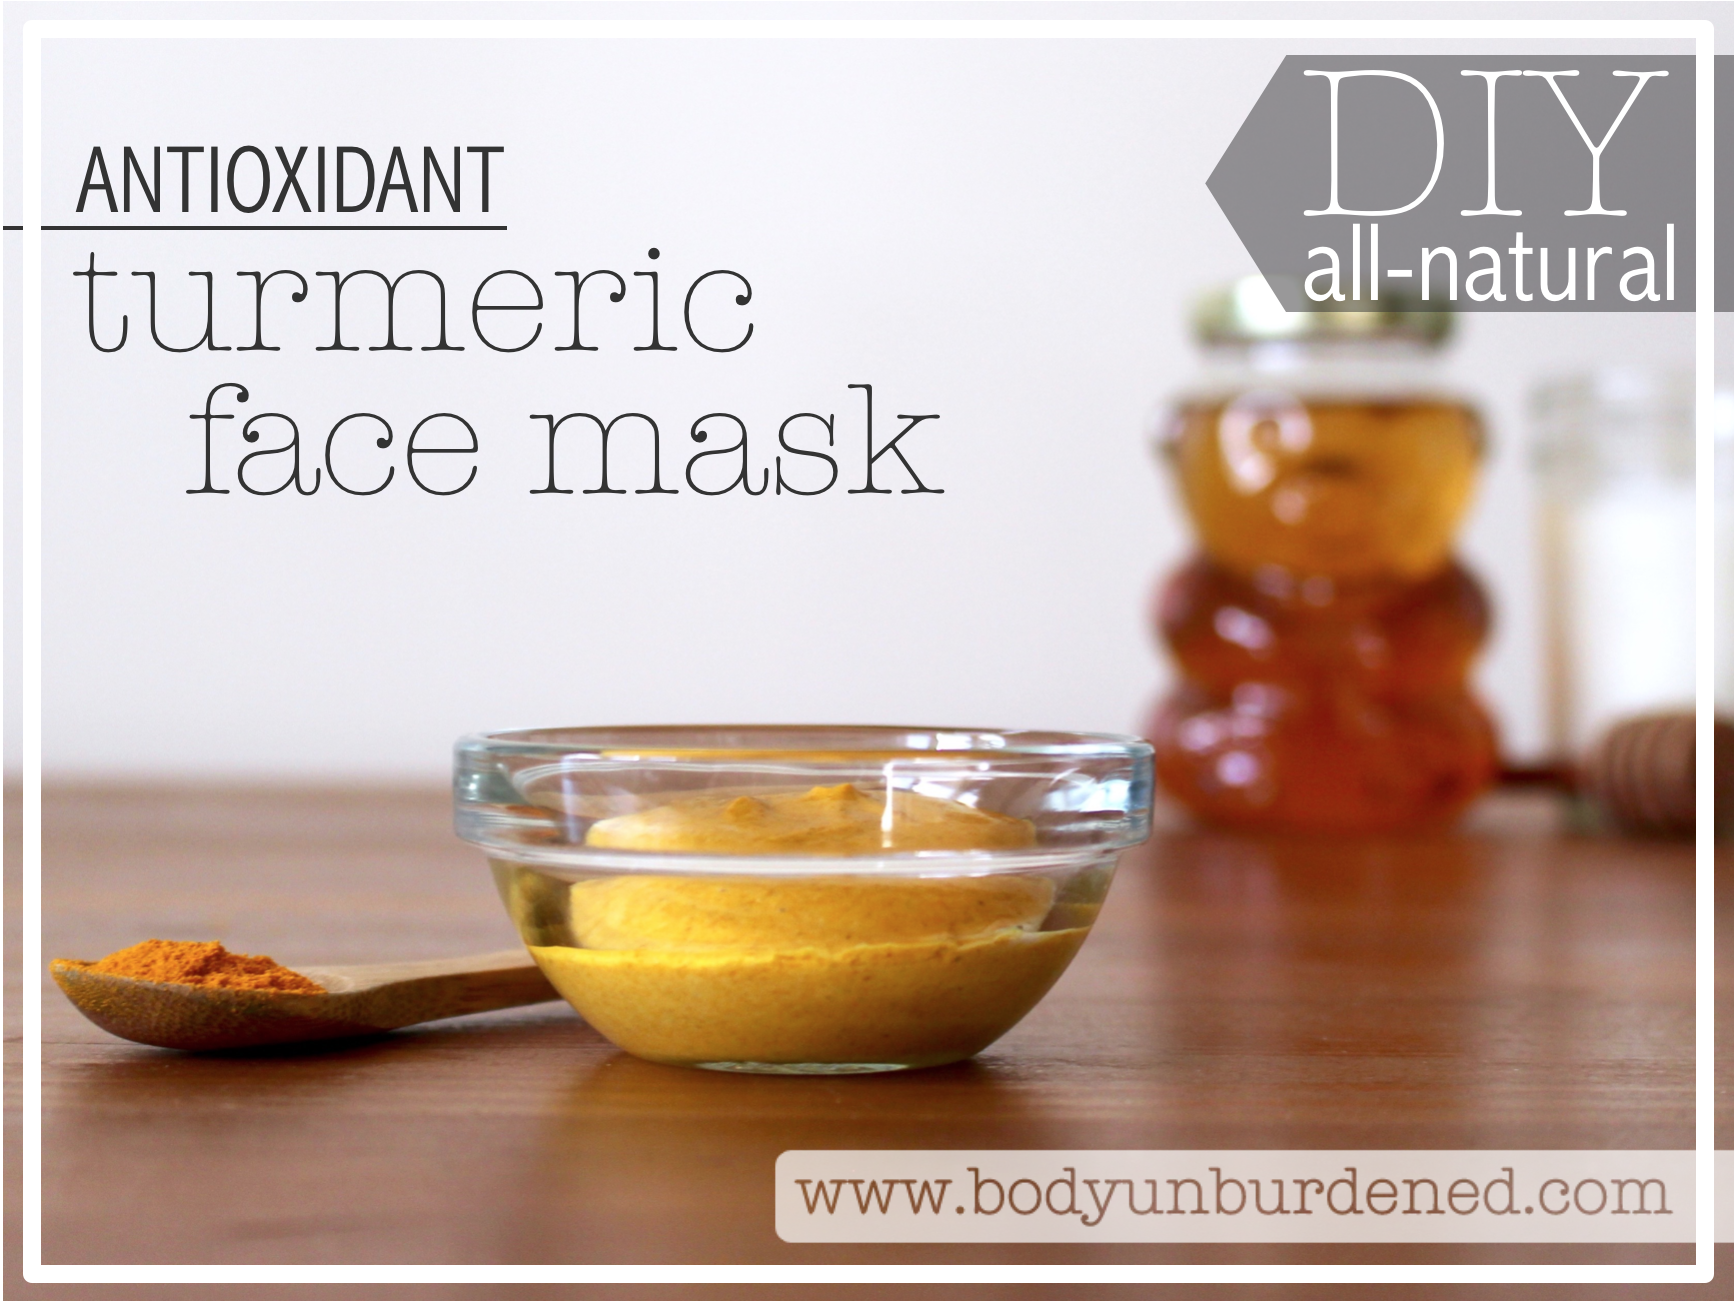 Diy-all-natural-antioxidant-turmeric-face-mask2